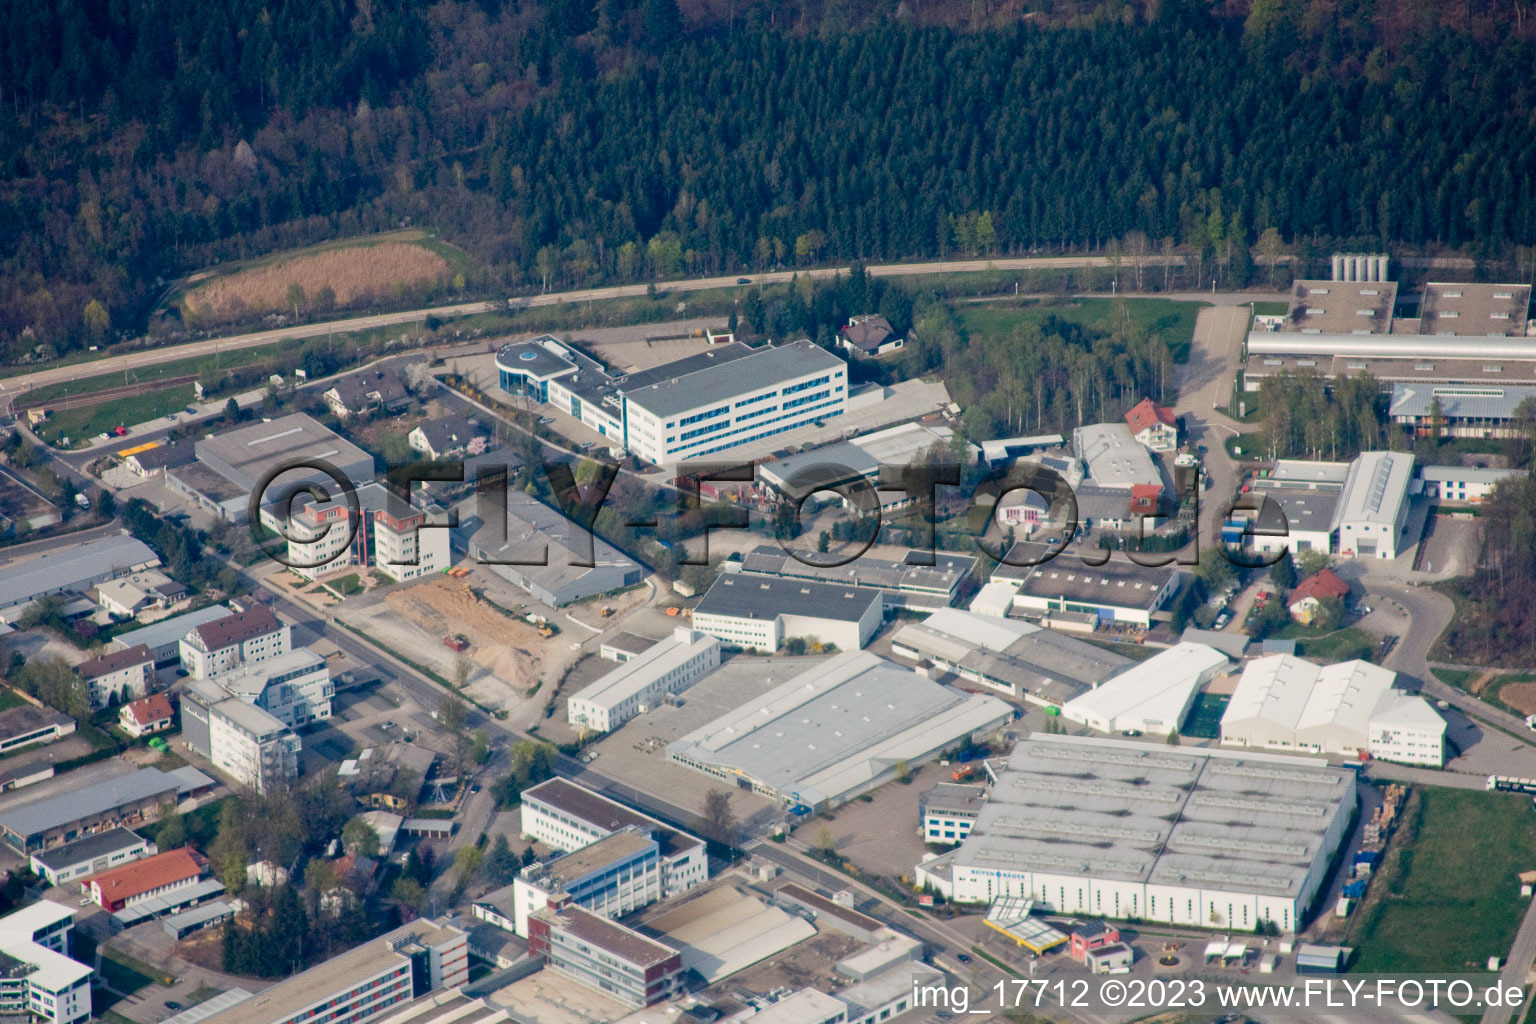 Ittersbach, zone industrielle à le quartier Im Stockmädle in Karlsbad dans le département Bade-Wurtemberg, Allemagne hors des airs